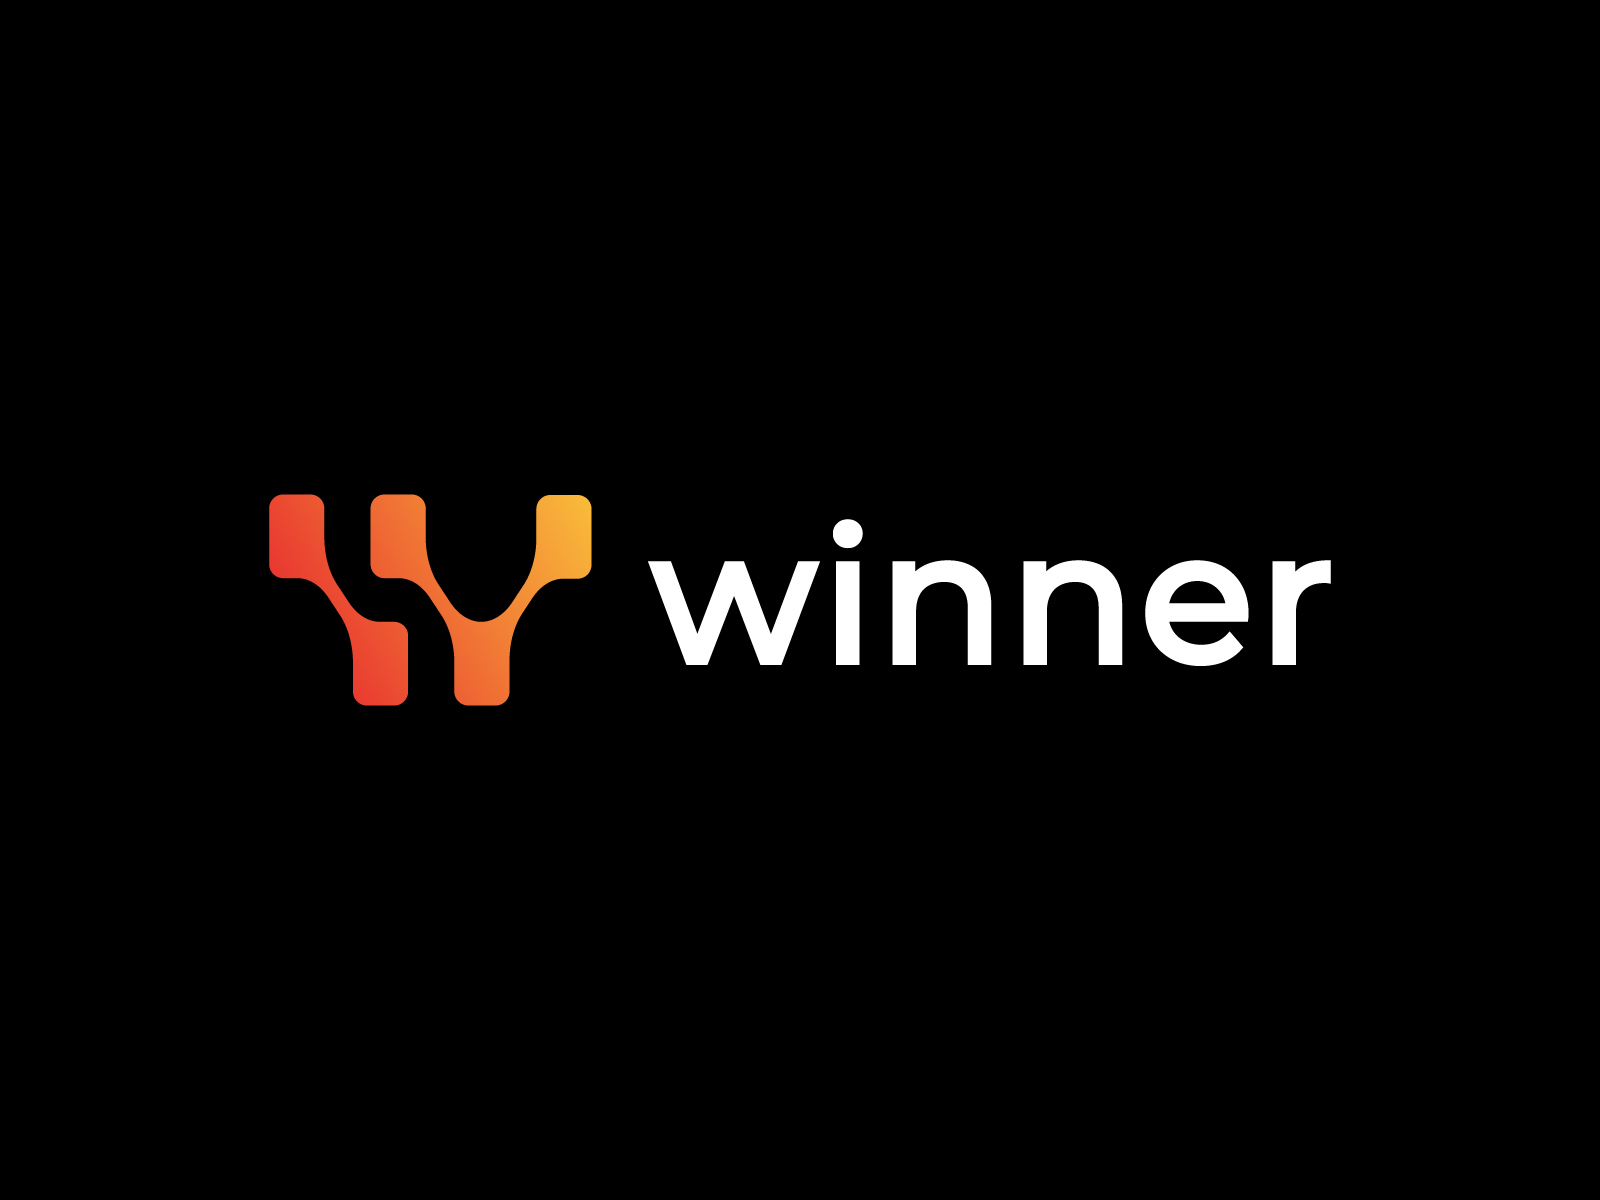 Winner Latter w logo by Nupur Akther - Logo Designer on Dribbble